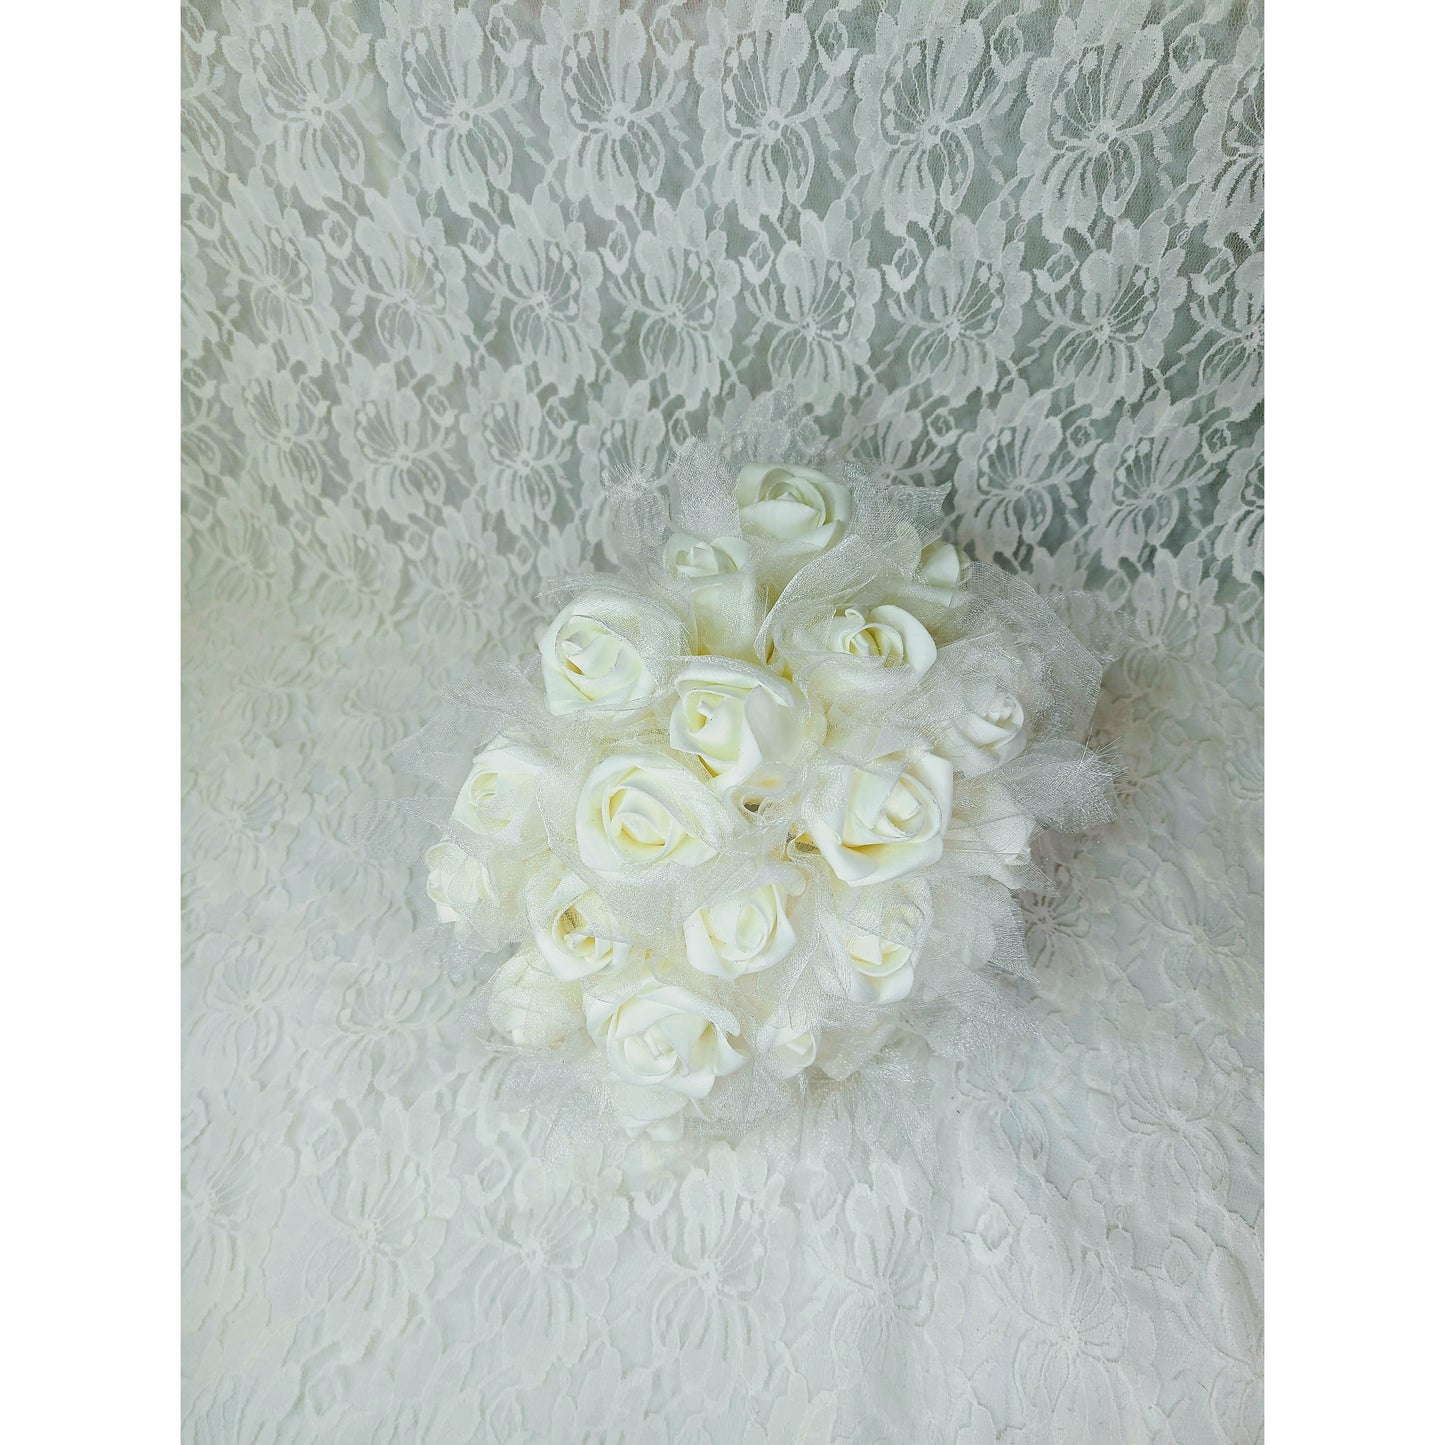 White Rose Buds Bouquet Faux Silk Floral Arrangement Wedding Flowers Centerpiece Décor Decorations Floral Arrangement